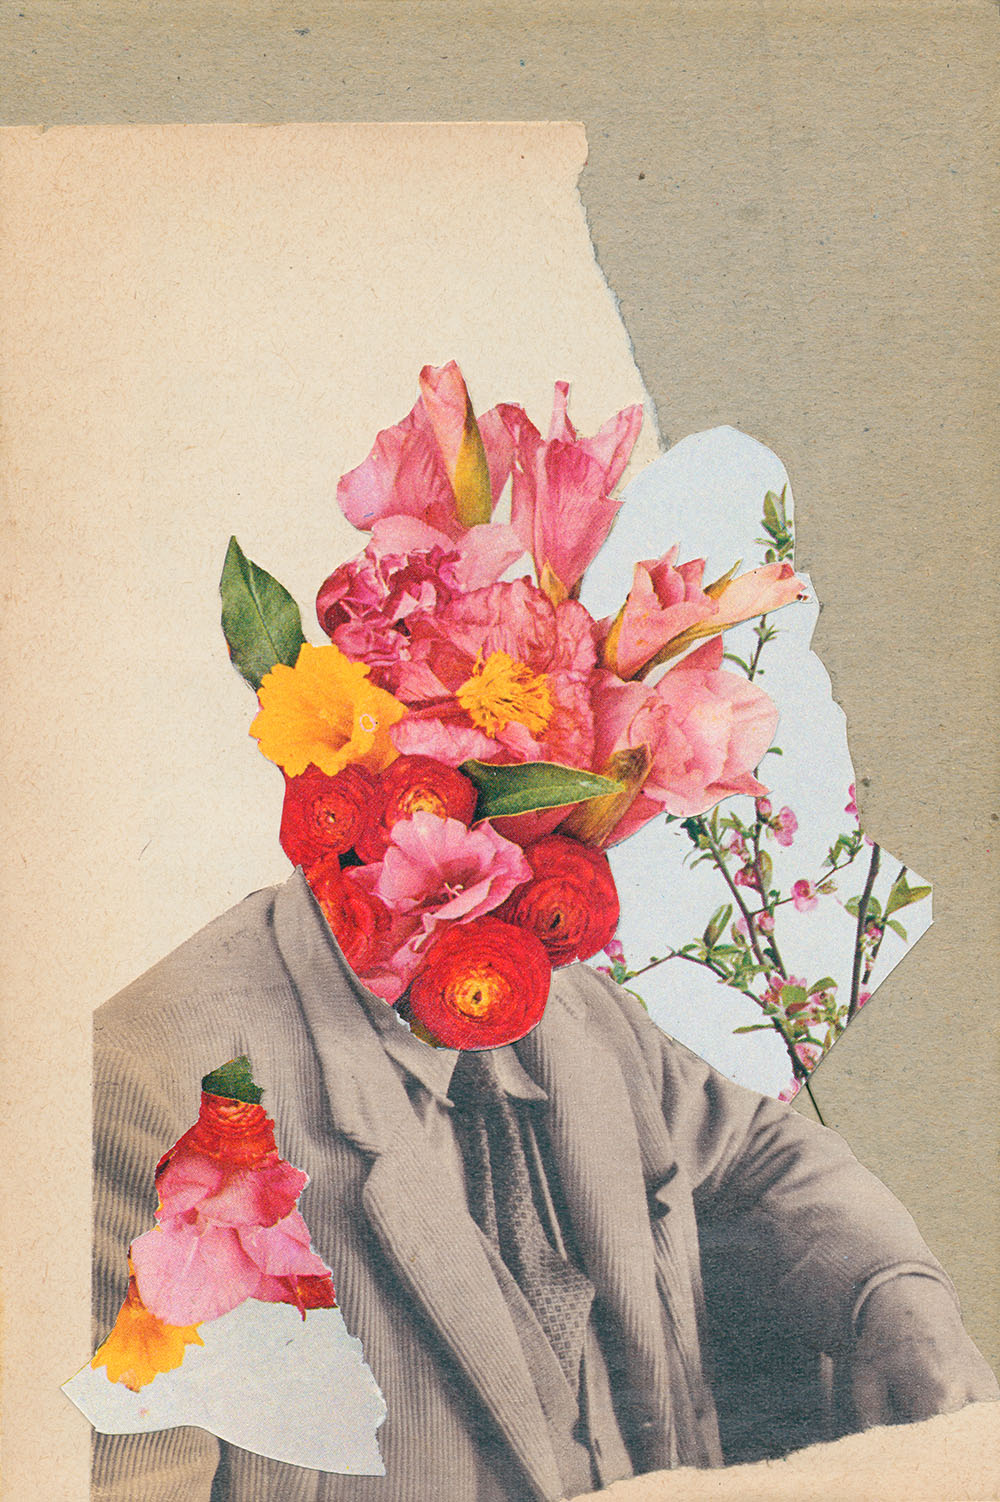 Blumenstrauß Kopf im Anzug und Krawatte - original Pflanzen, Blüten, Kakteen mit Klamotten, Kleidung Plants with Pants Collage von Markus Wuelbern